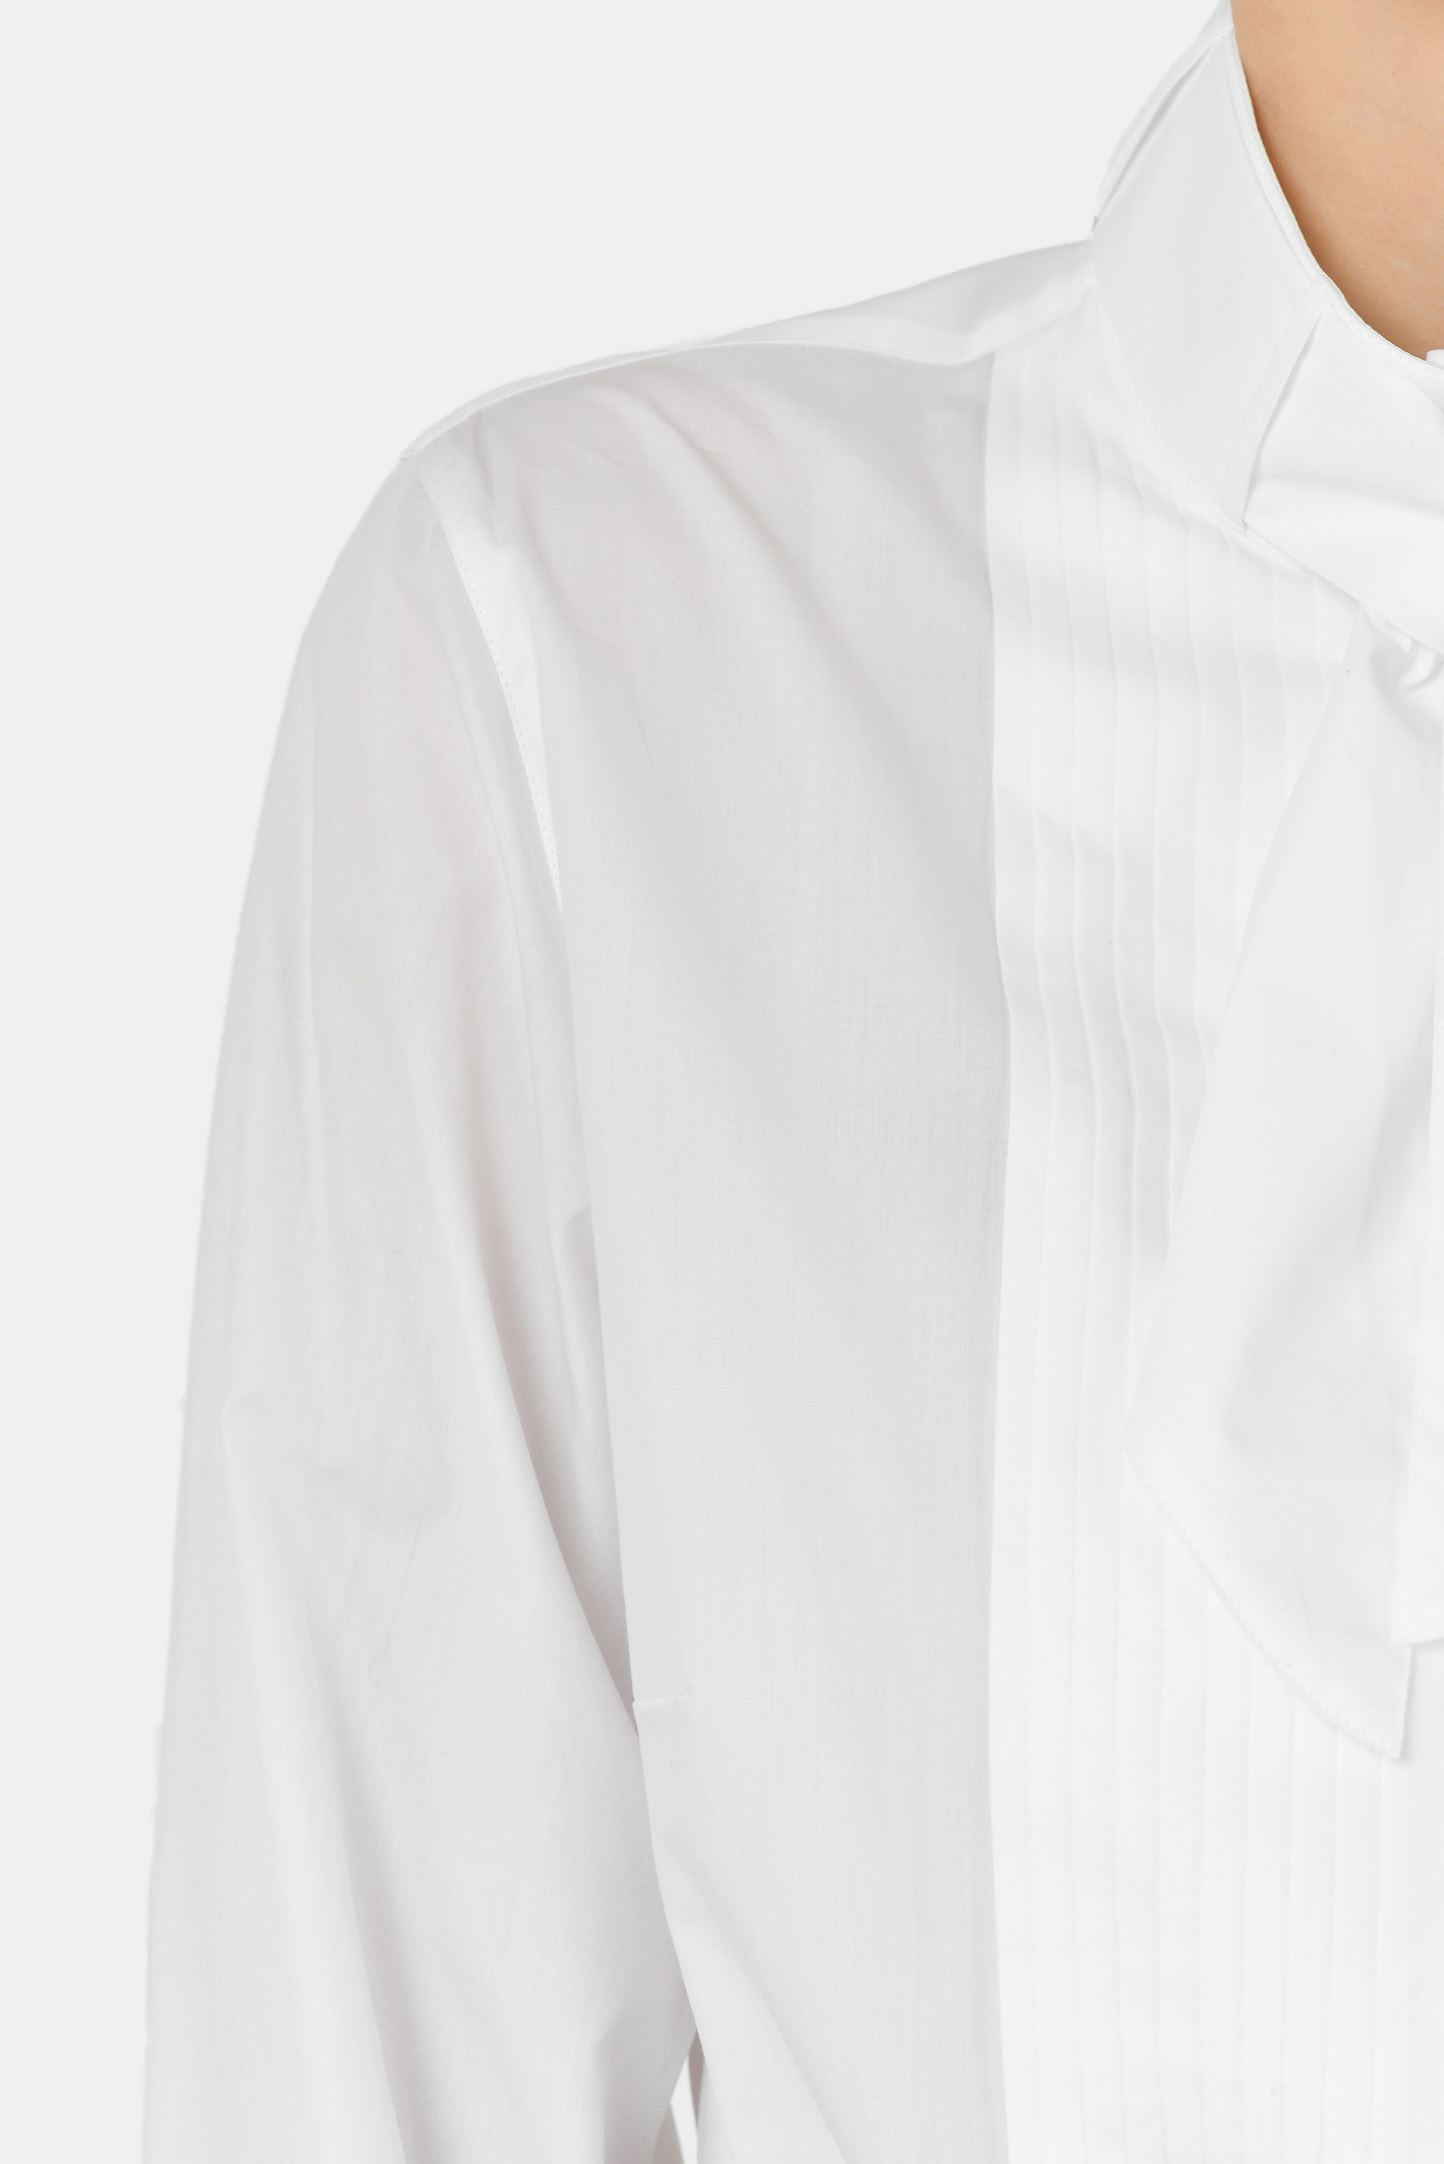 Блуза DOLCE & GABBANA F5L75T FU5K9, цвет: Белый, Женский